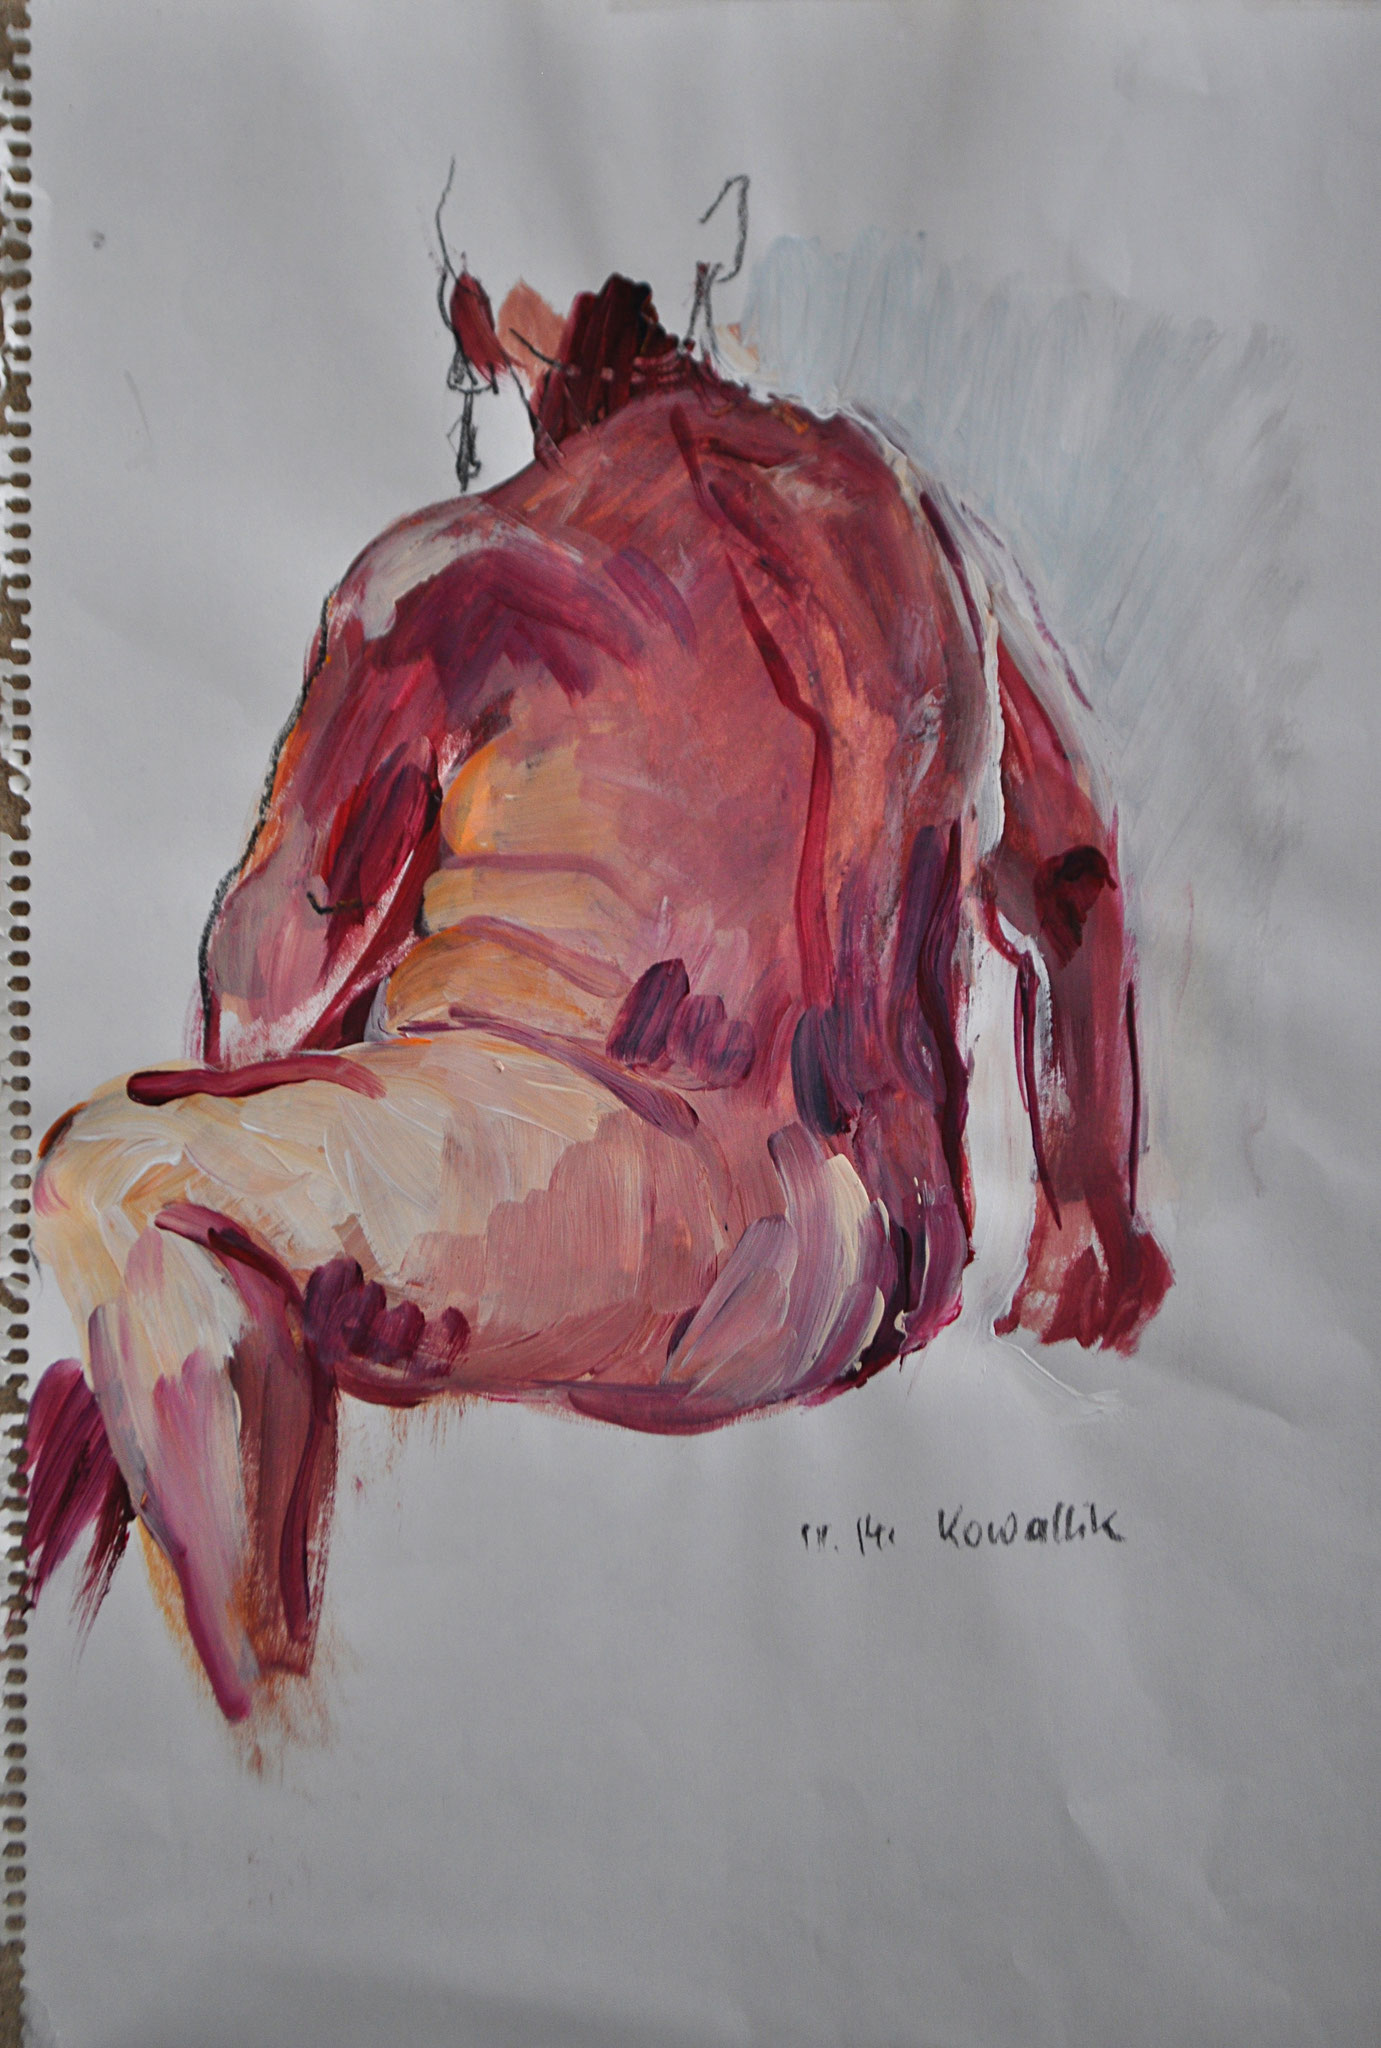 Akt sitzend. Rückenansicht. Acryl und Kohle auf Skizzenpapier, 2014. Format: 30 x 42 cm